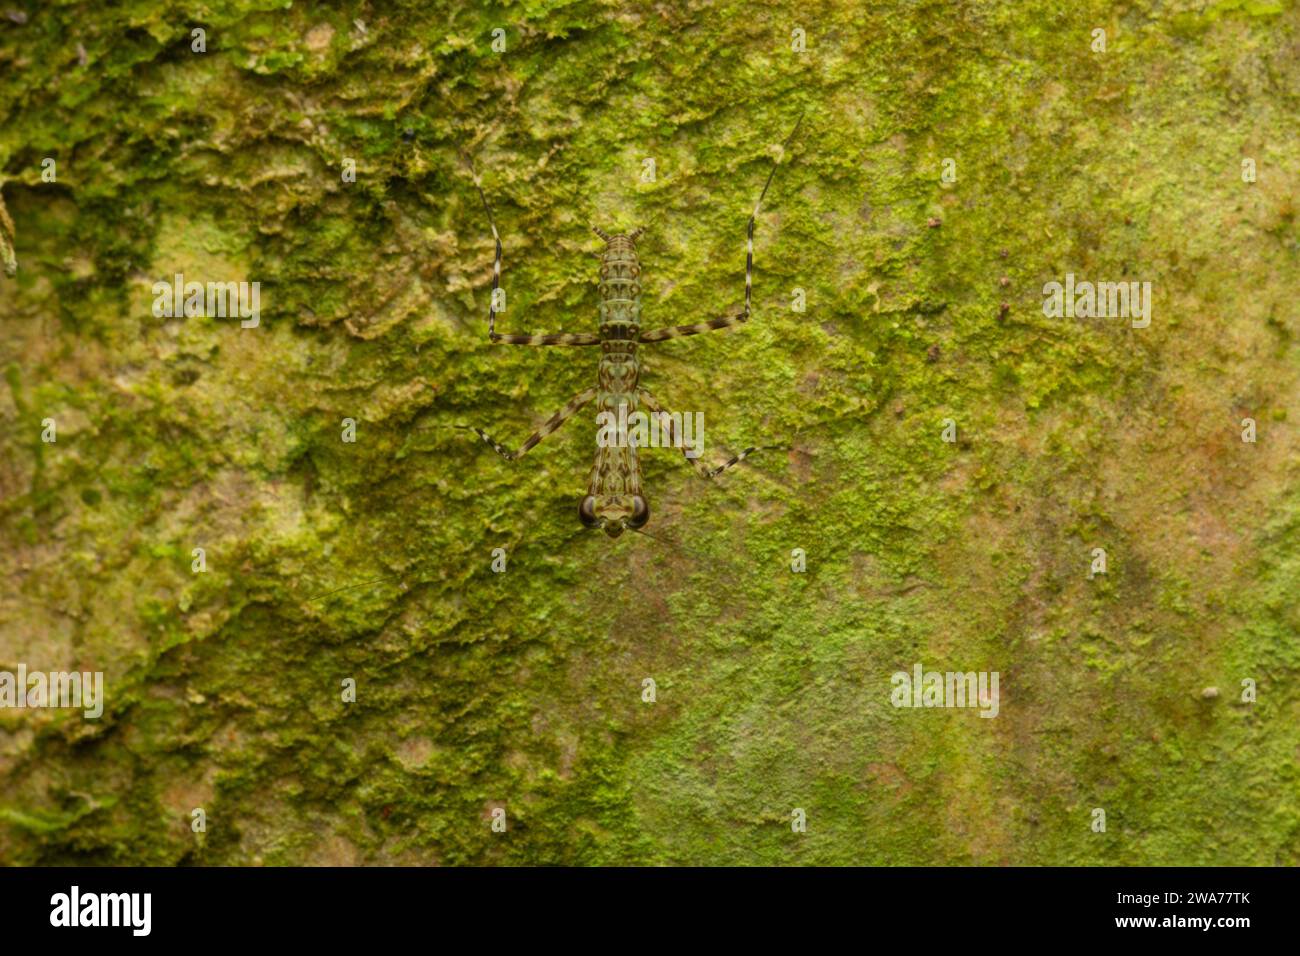 mantis preganti mimetizzati sulla corteccia degli alberi. Foresta pluviale di pianura, Sarapiquí, versante caraibico, Costa Rica. Foto Stock